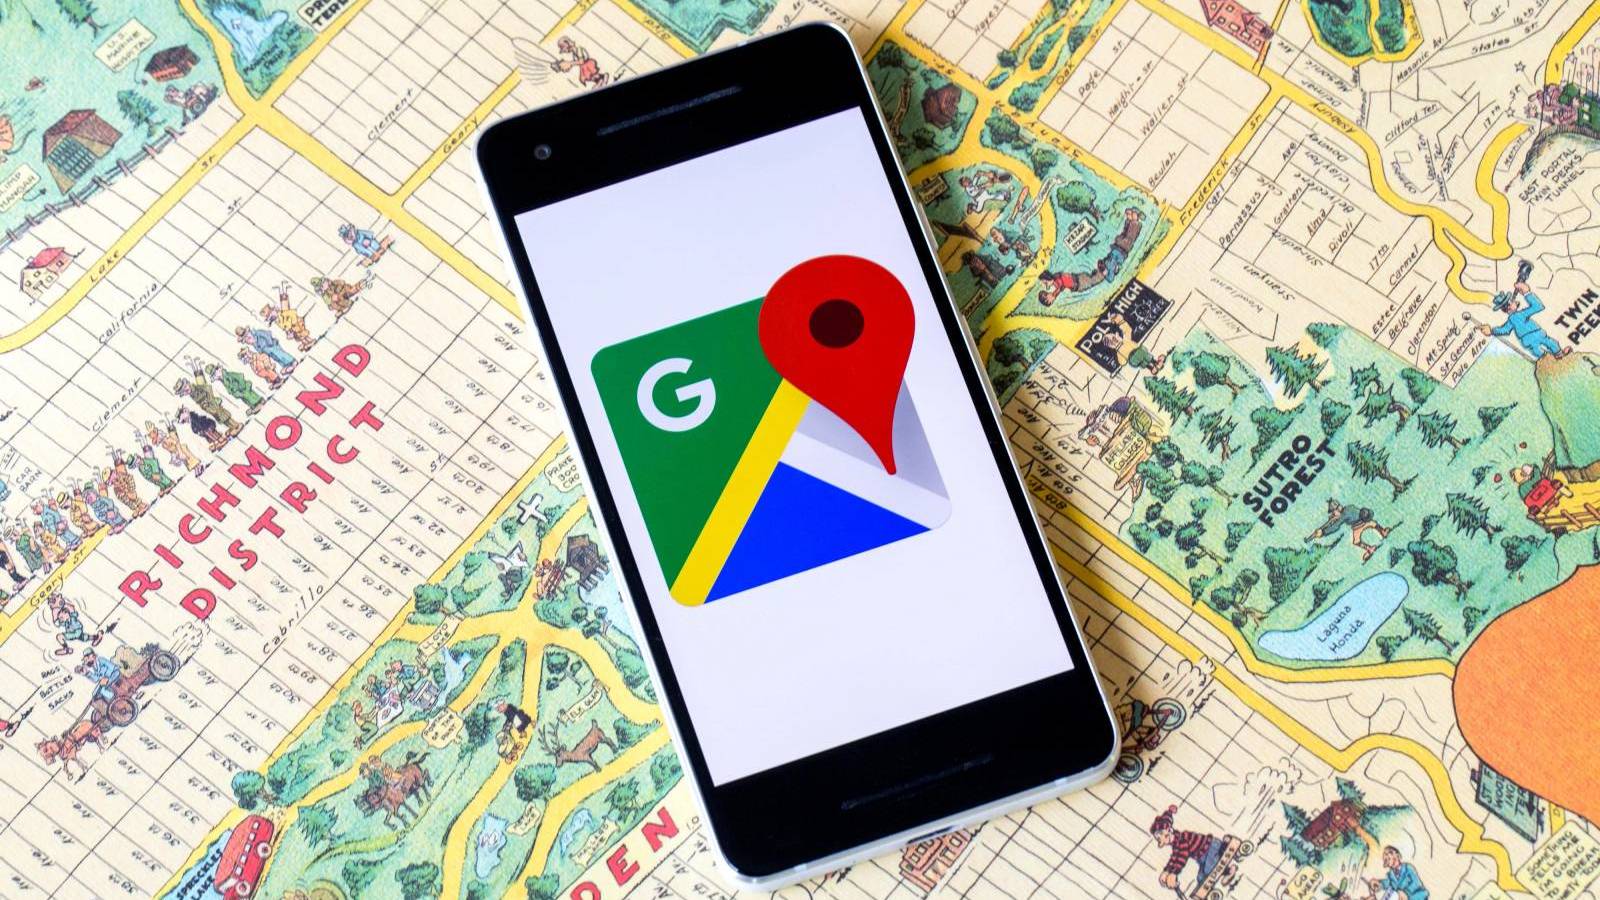 Lanzada la actualización de Google Maps, con qué cambios llega ahora